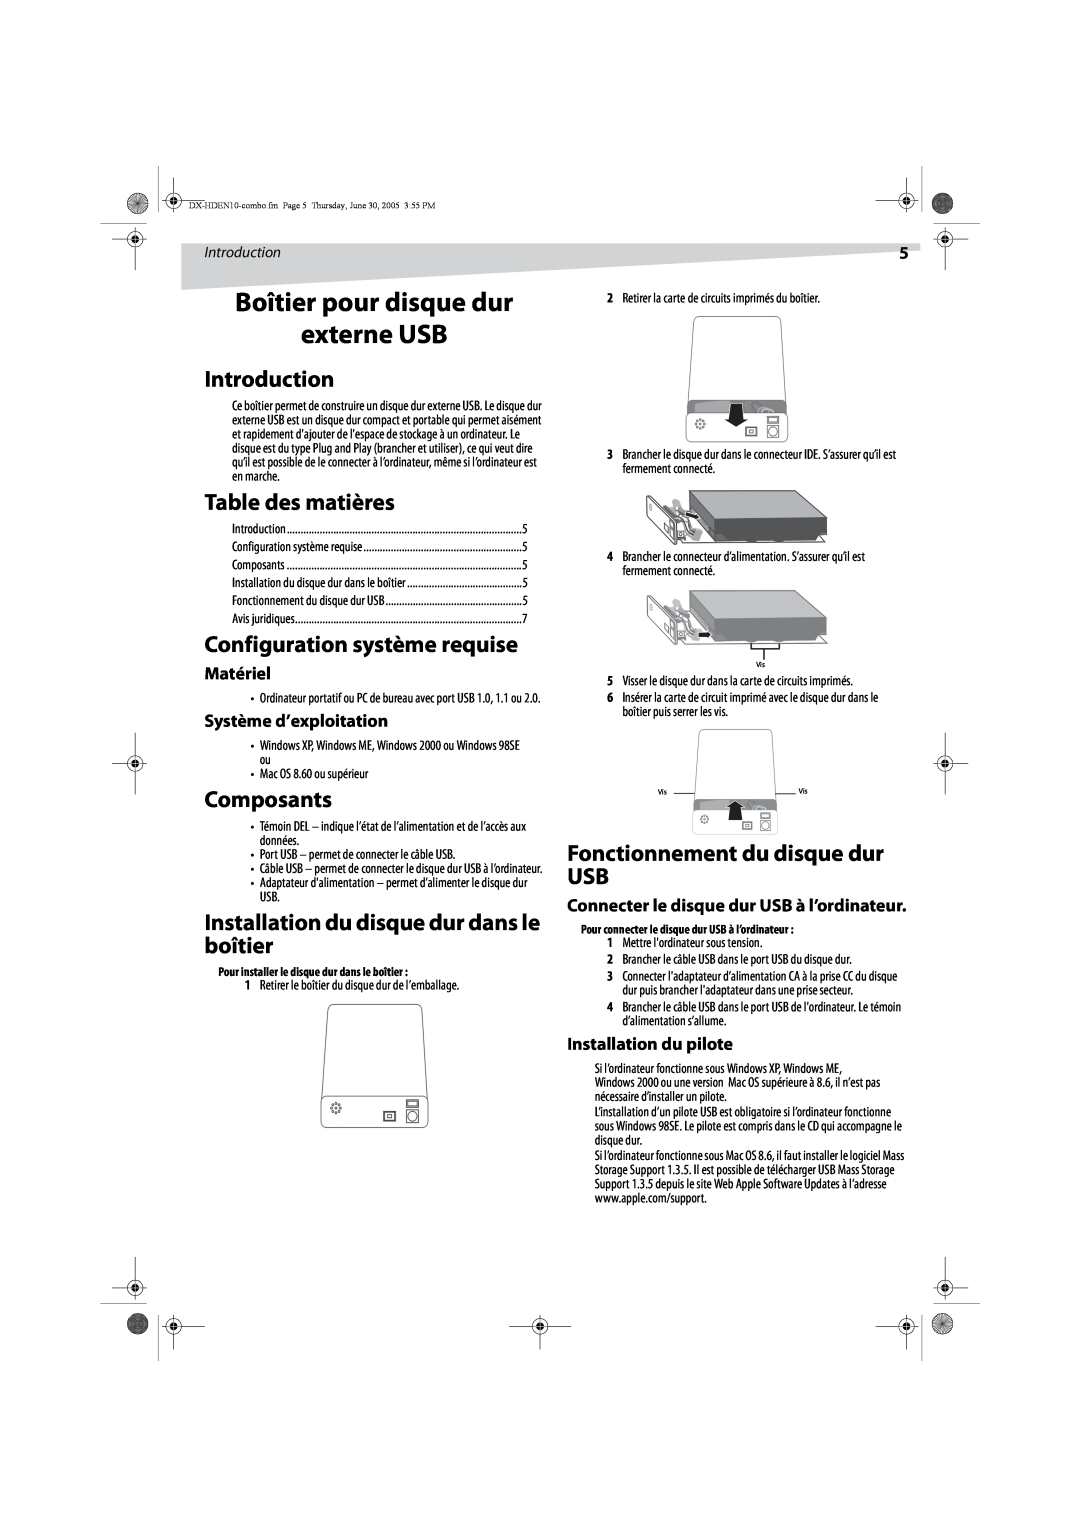 Dynex DX-HDEN10 manual Boîtier pour disque dur externe USB, Table des matières, Configuration système requise, Composants 